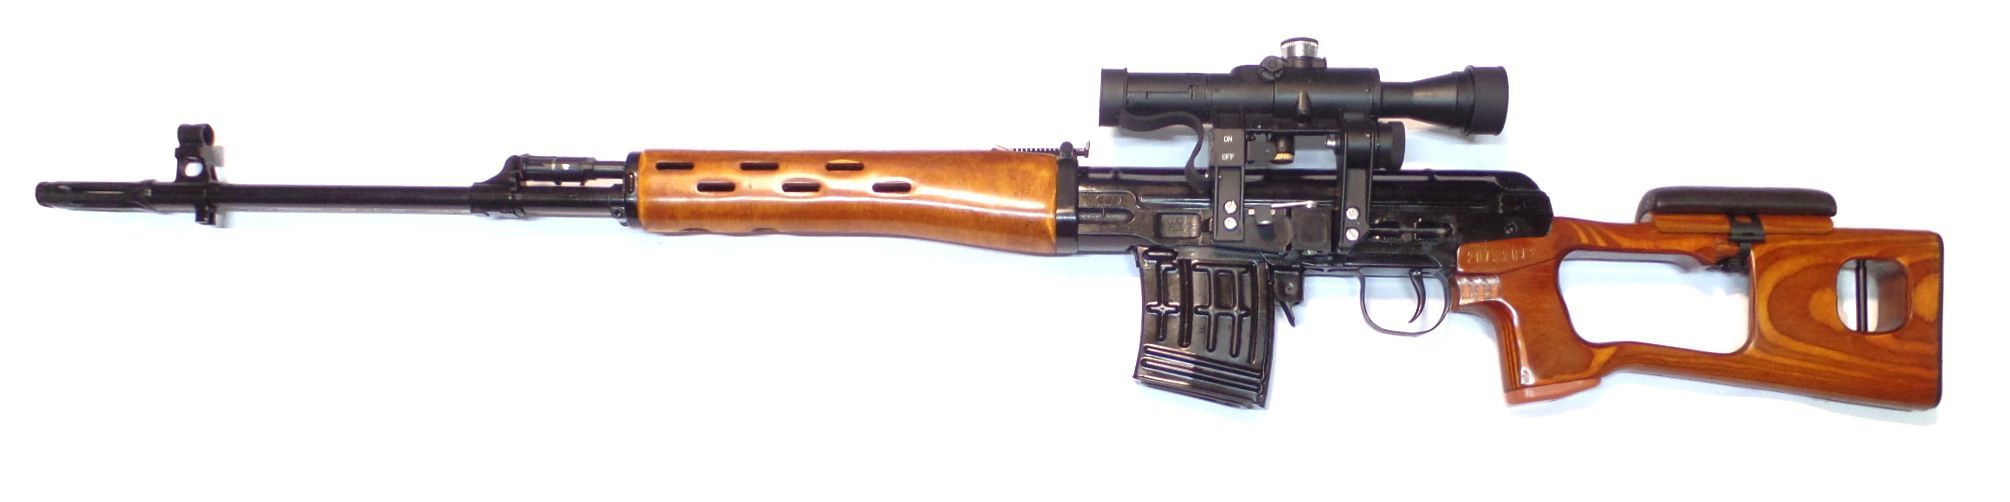 DRAGUNOV SVD calibre 7.62x54R